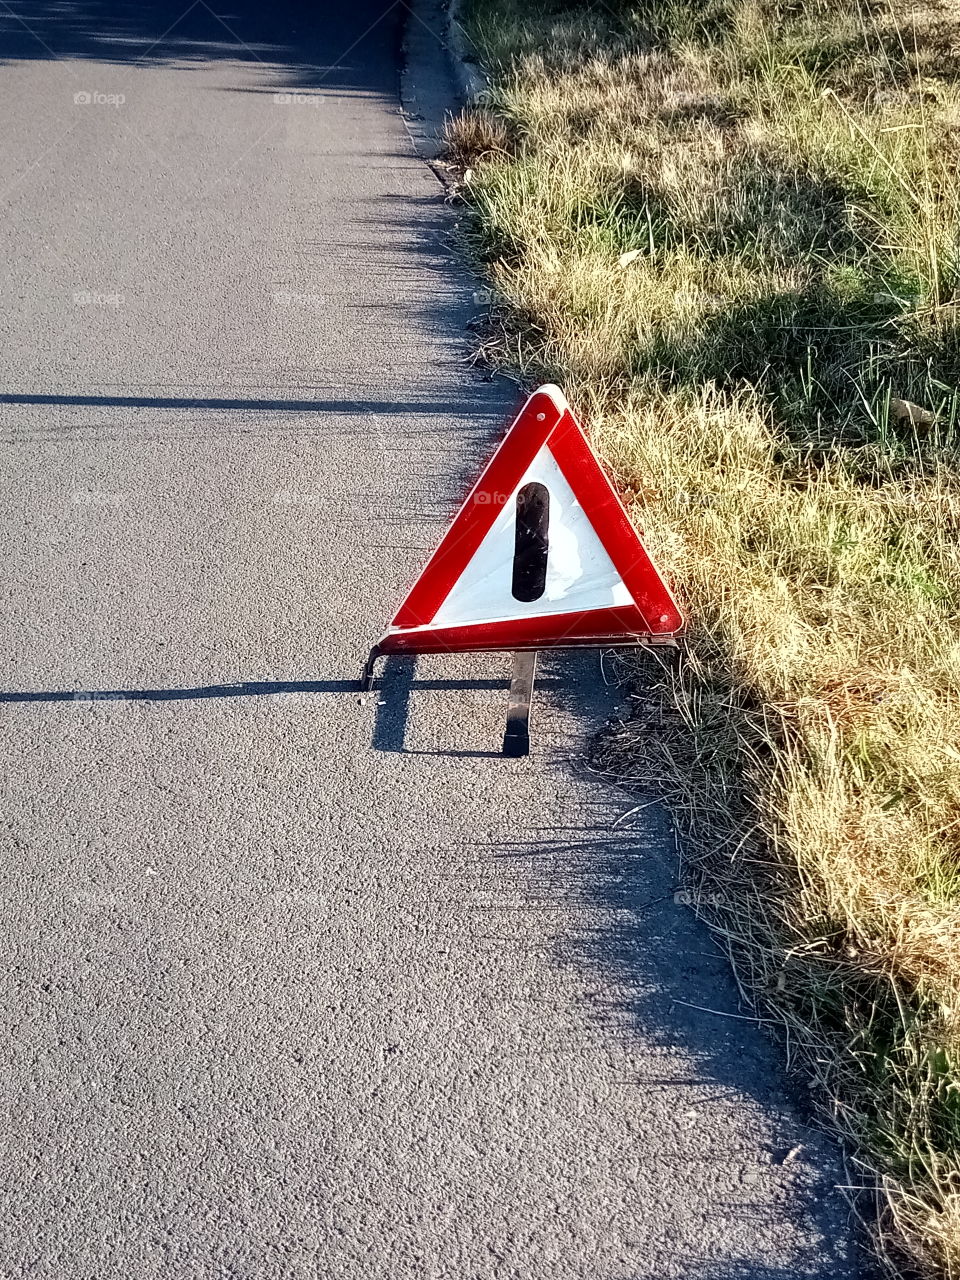 Vorsicht Falle,Gefahren lauern auf unseren Straßen,und das Schild wurde einfach vergessen